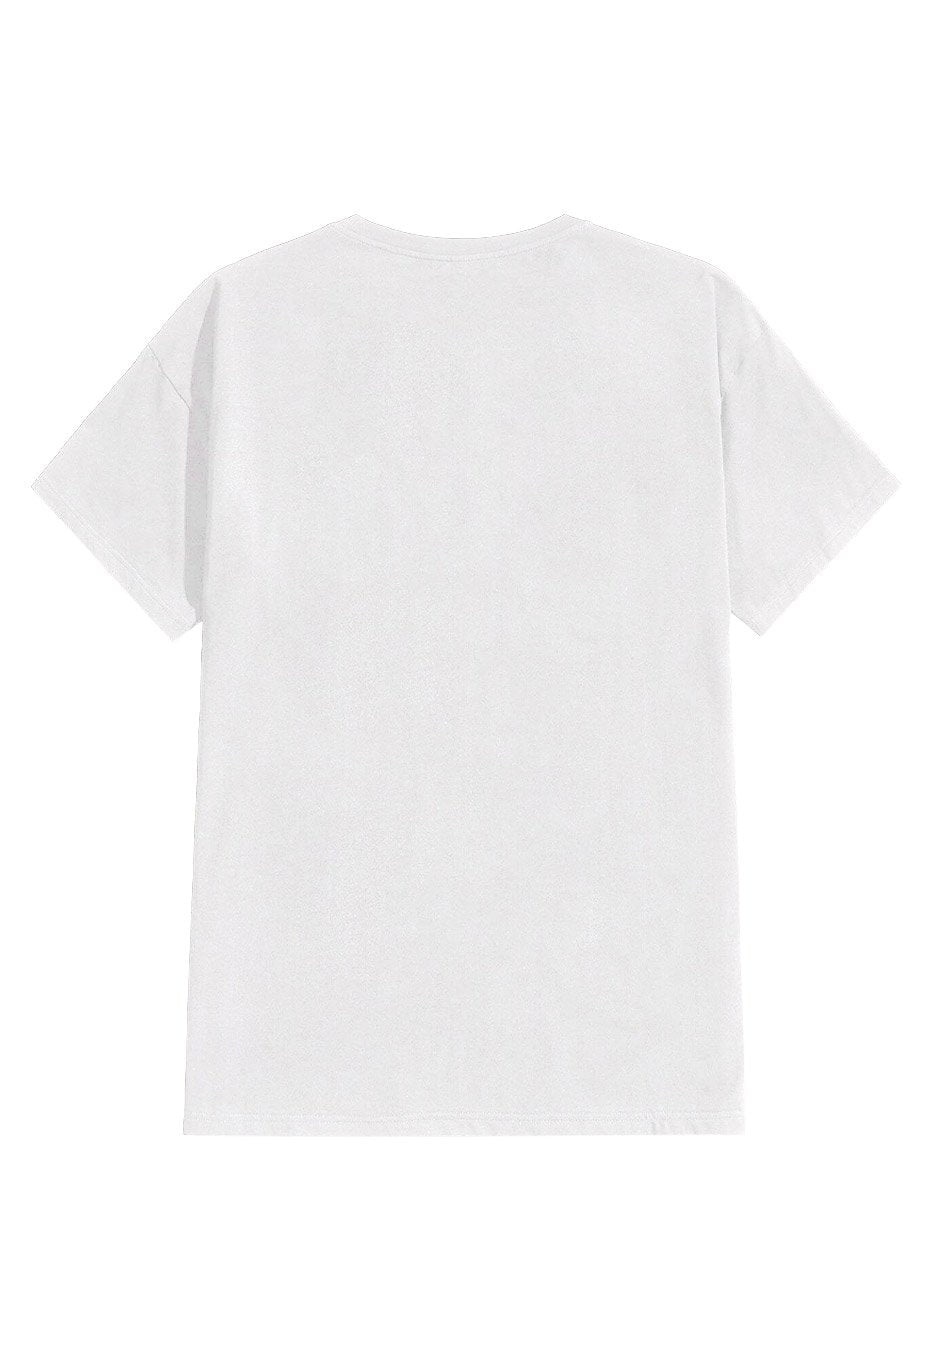 Heaven Shall Burn - Chameleon White - T-Shirt